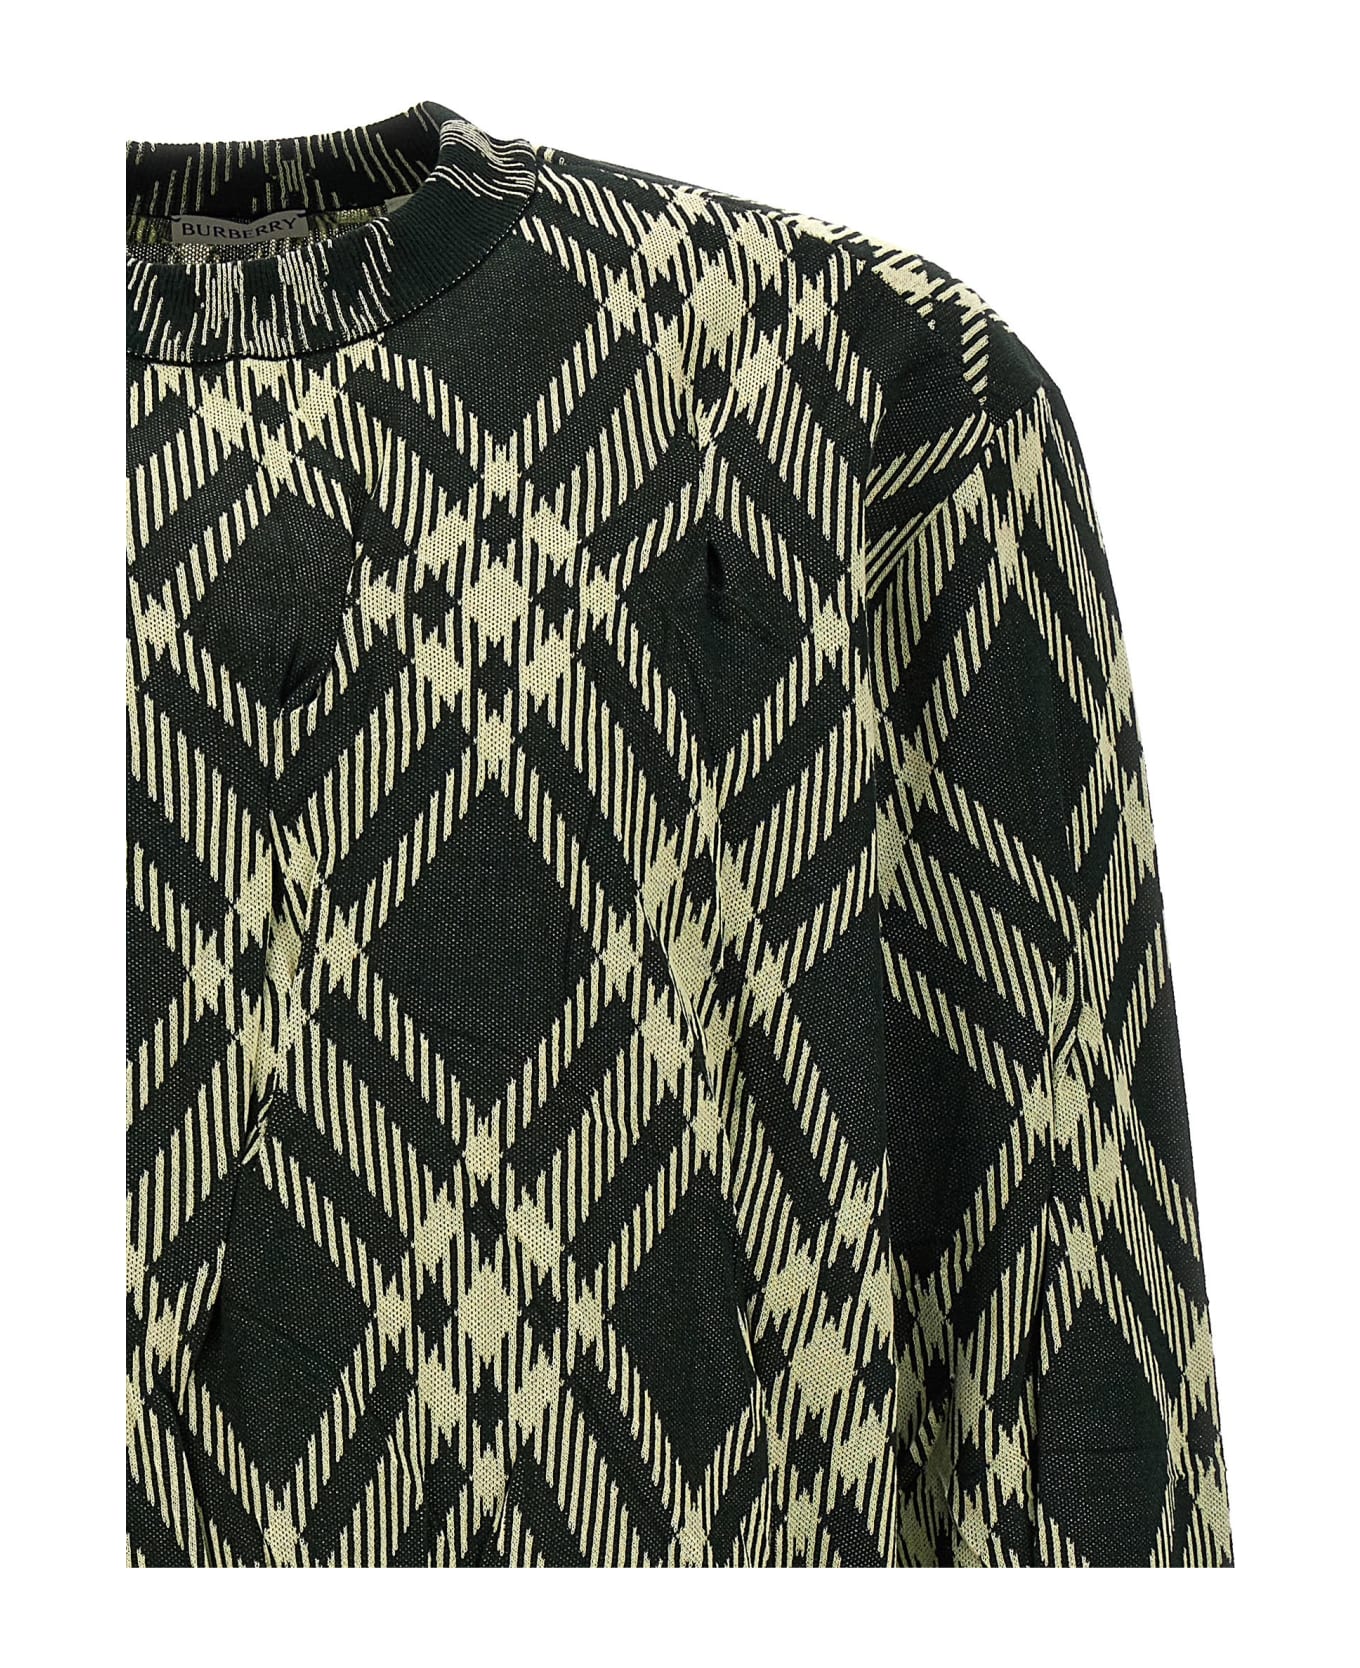 Burberry Check Crinkled Sweater - Green ニットウェア